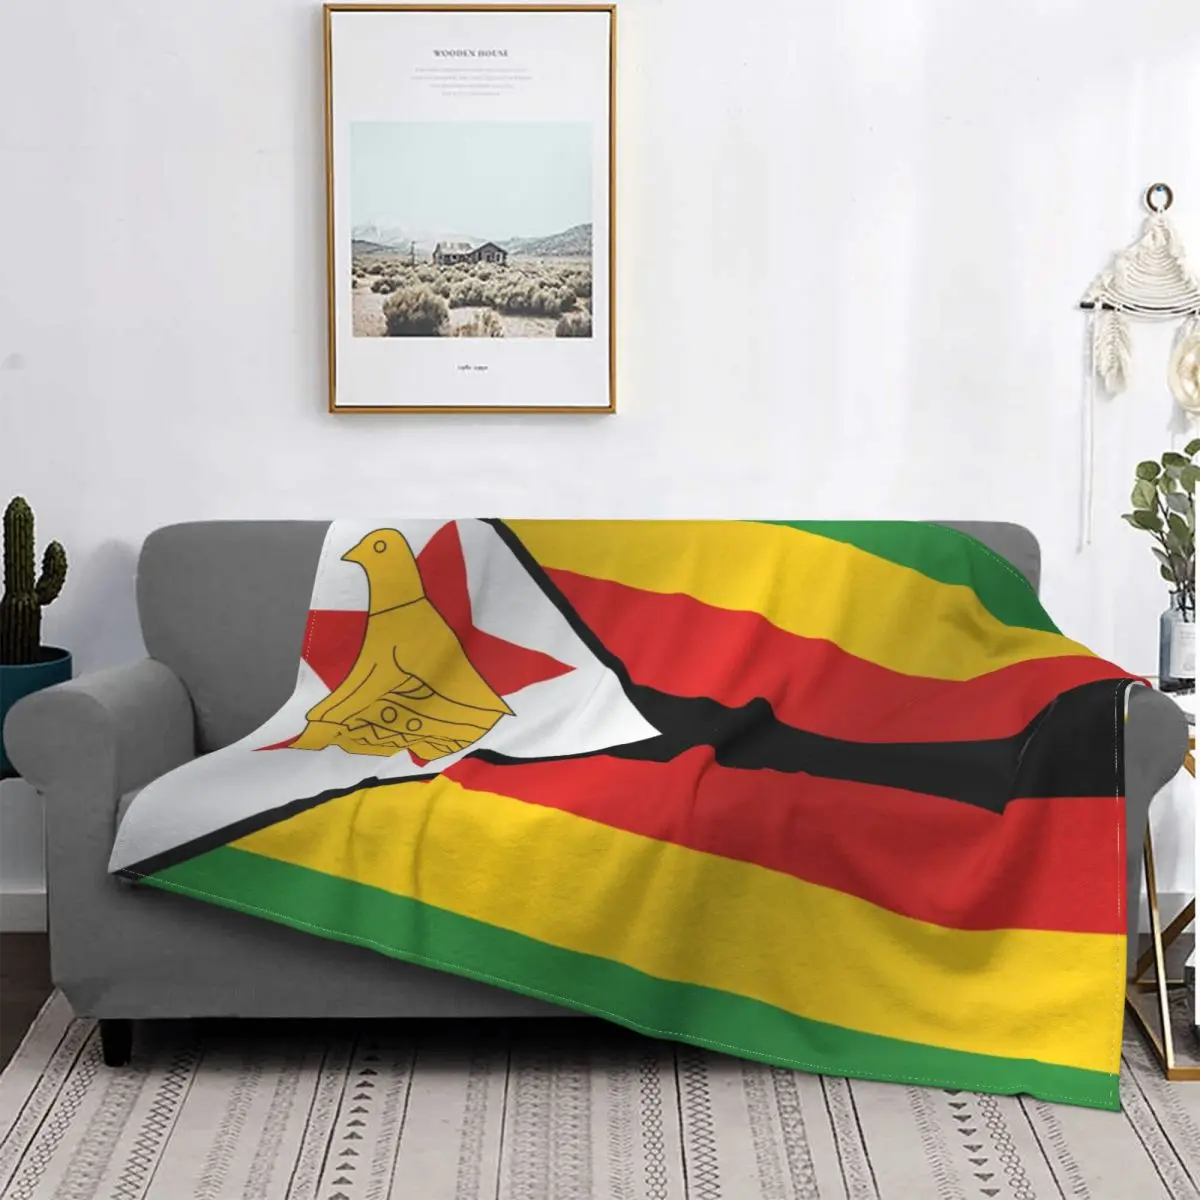 

Покрывало с флагом Зимбабве, супермягкое зимнее покрывало для дивана, кровати, плюшевое покрывало для спальни, Пушистый подарок